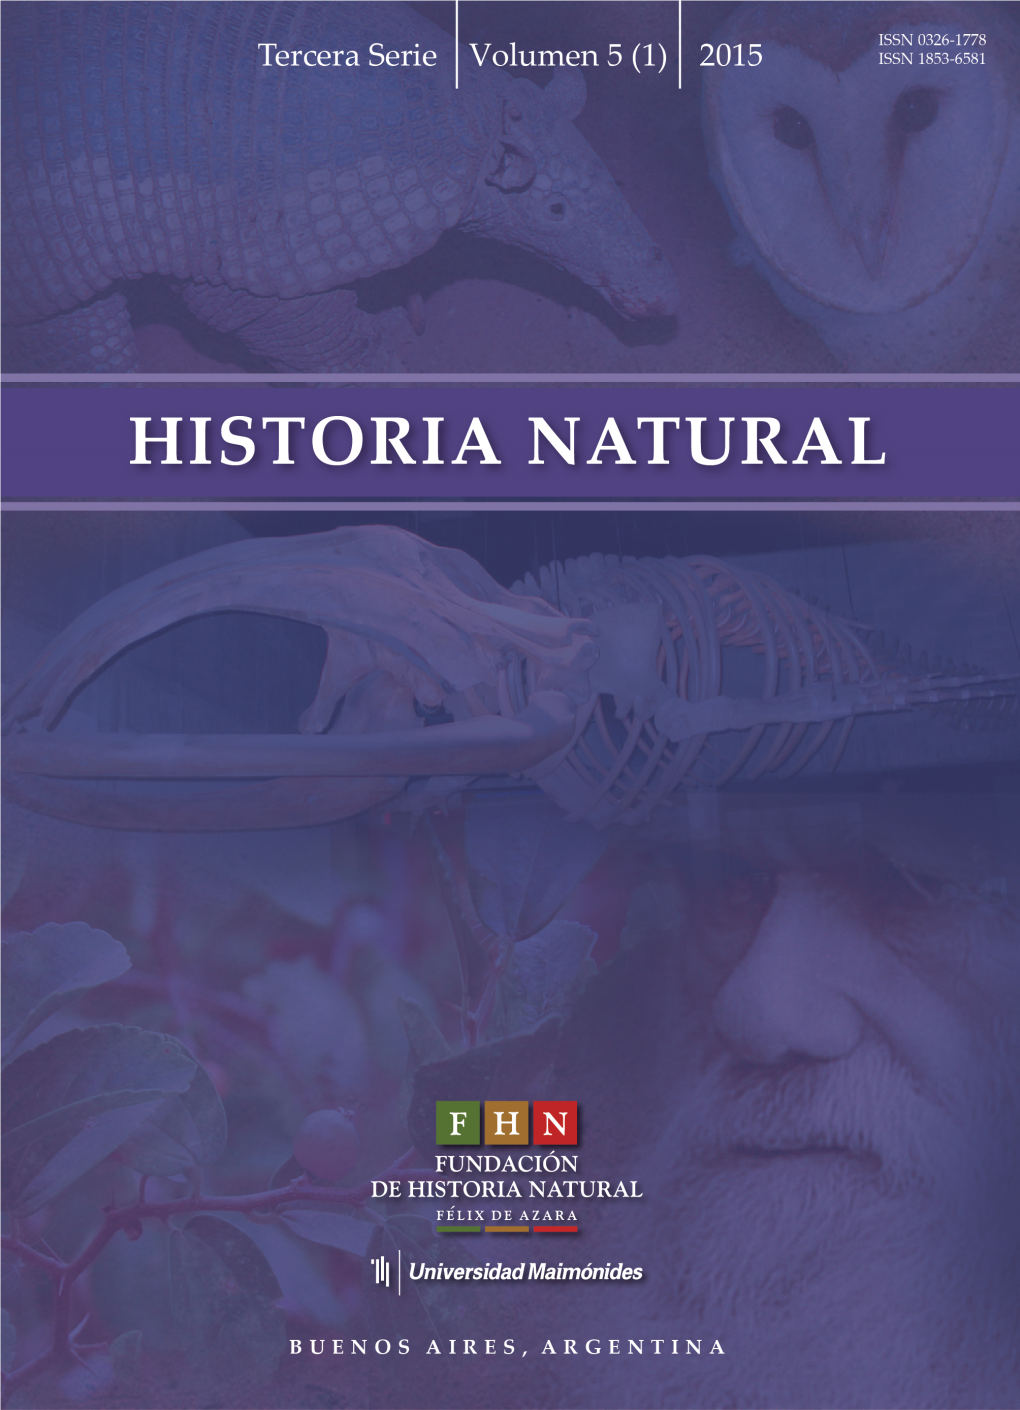 Historia Natural